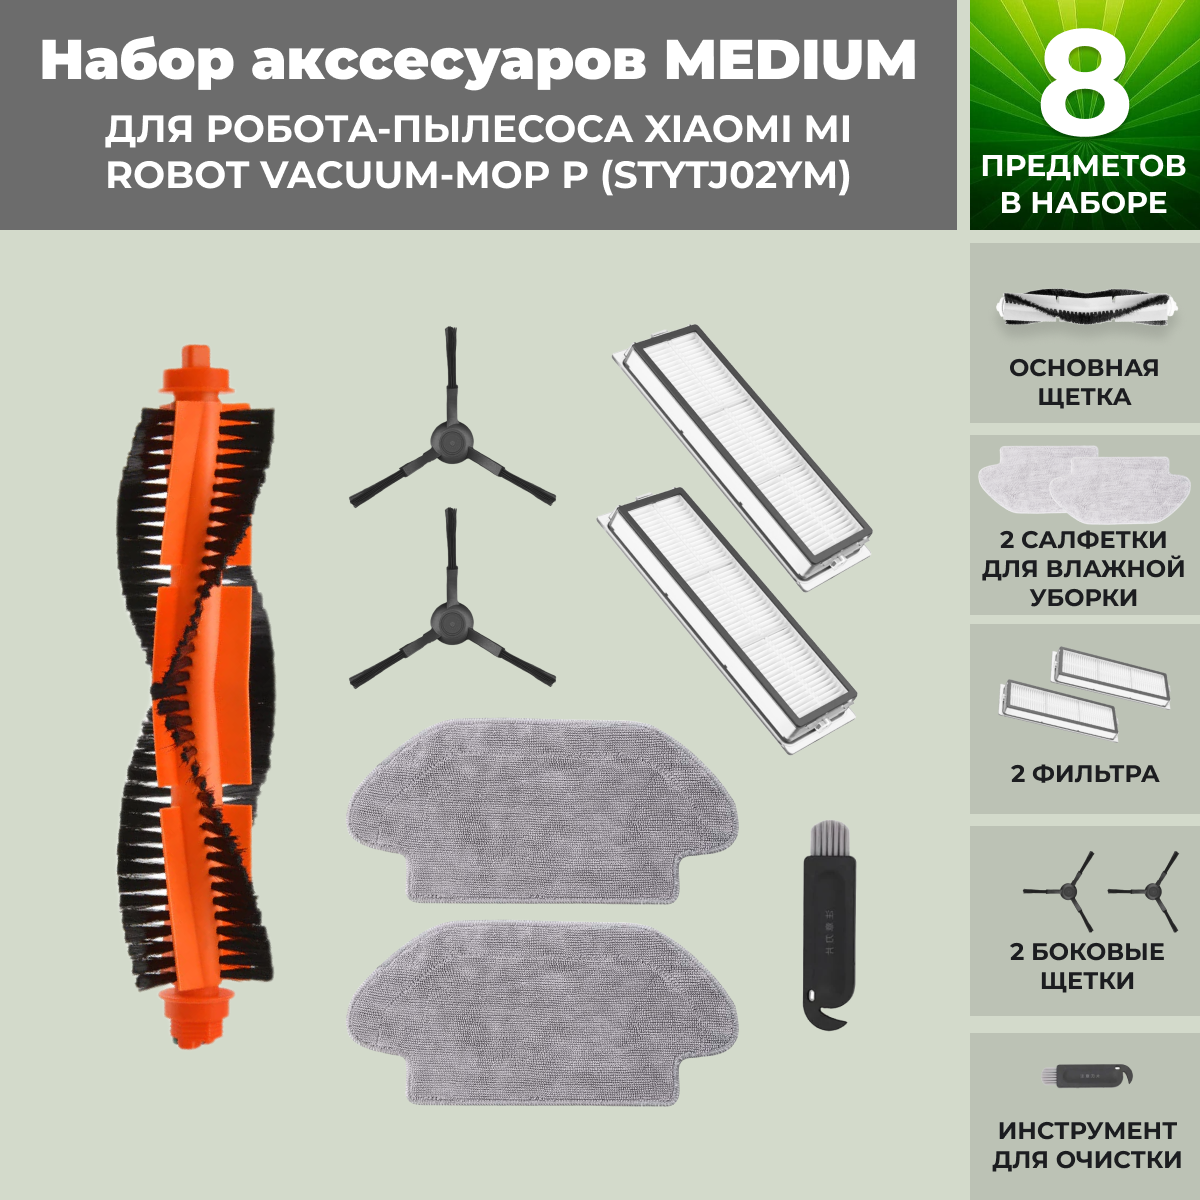 Набор аксессуаров Medium для робота-пылесоса Xiaomi Mi Robot Vacuum-Mop P (STYTJ02YM), черные боковые щетки, фото 1